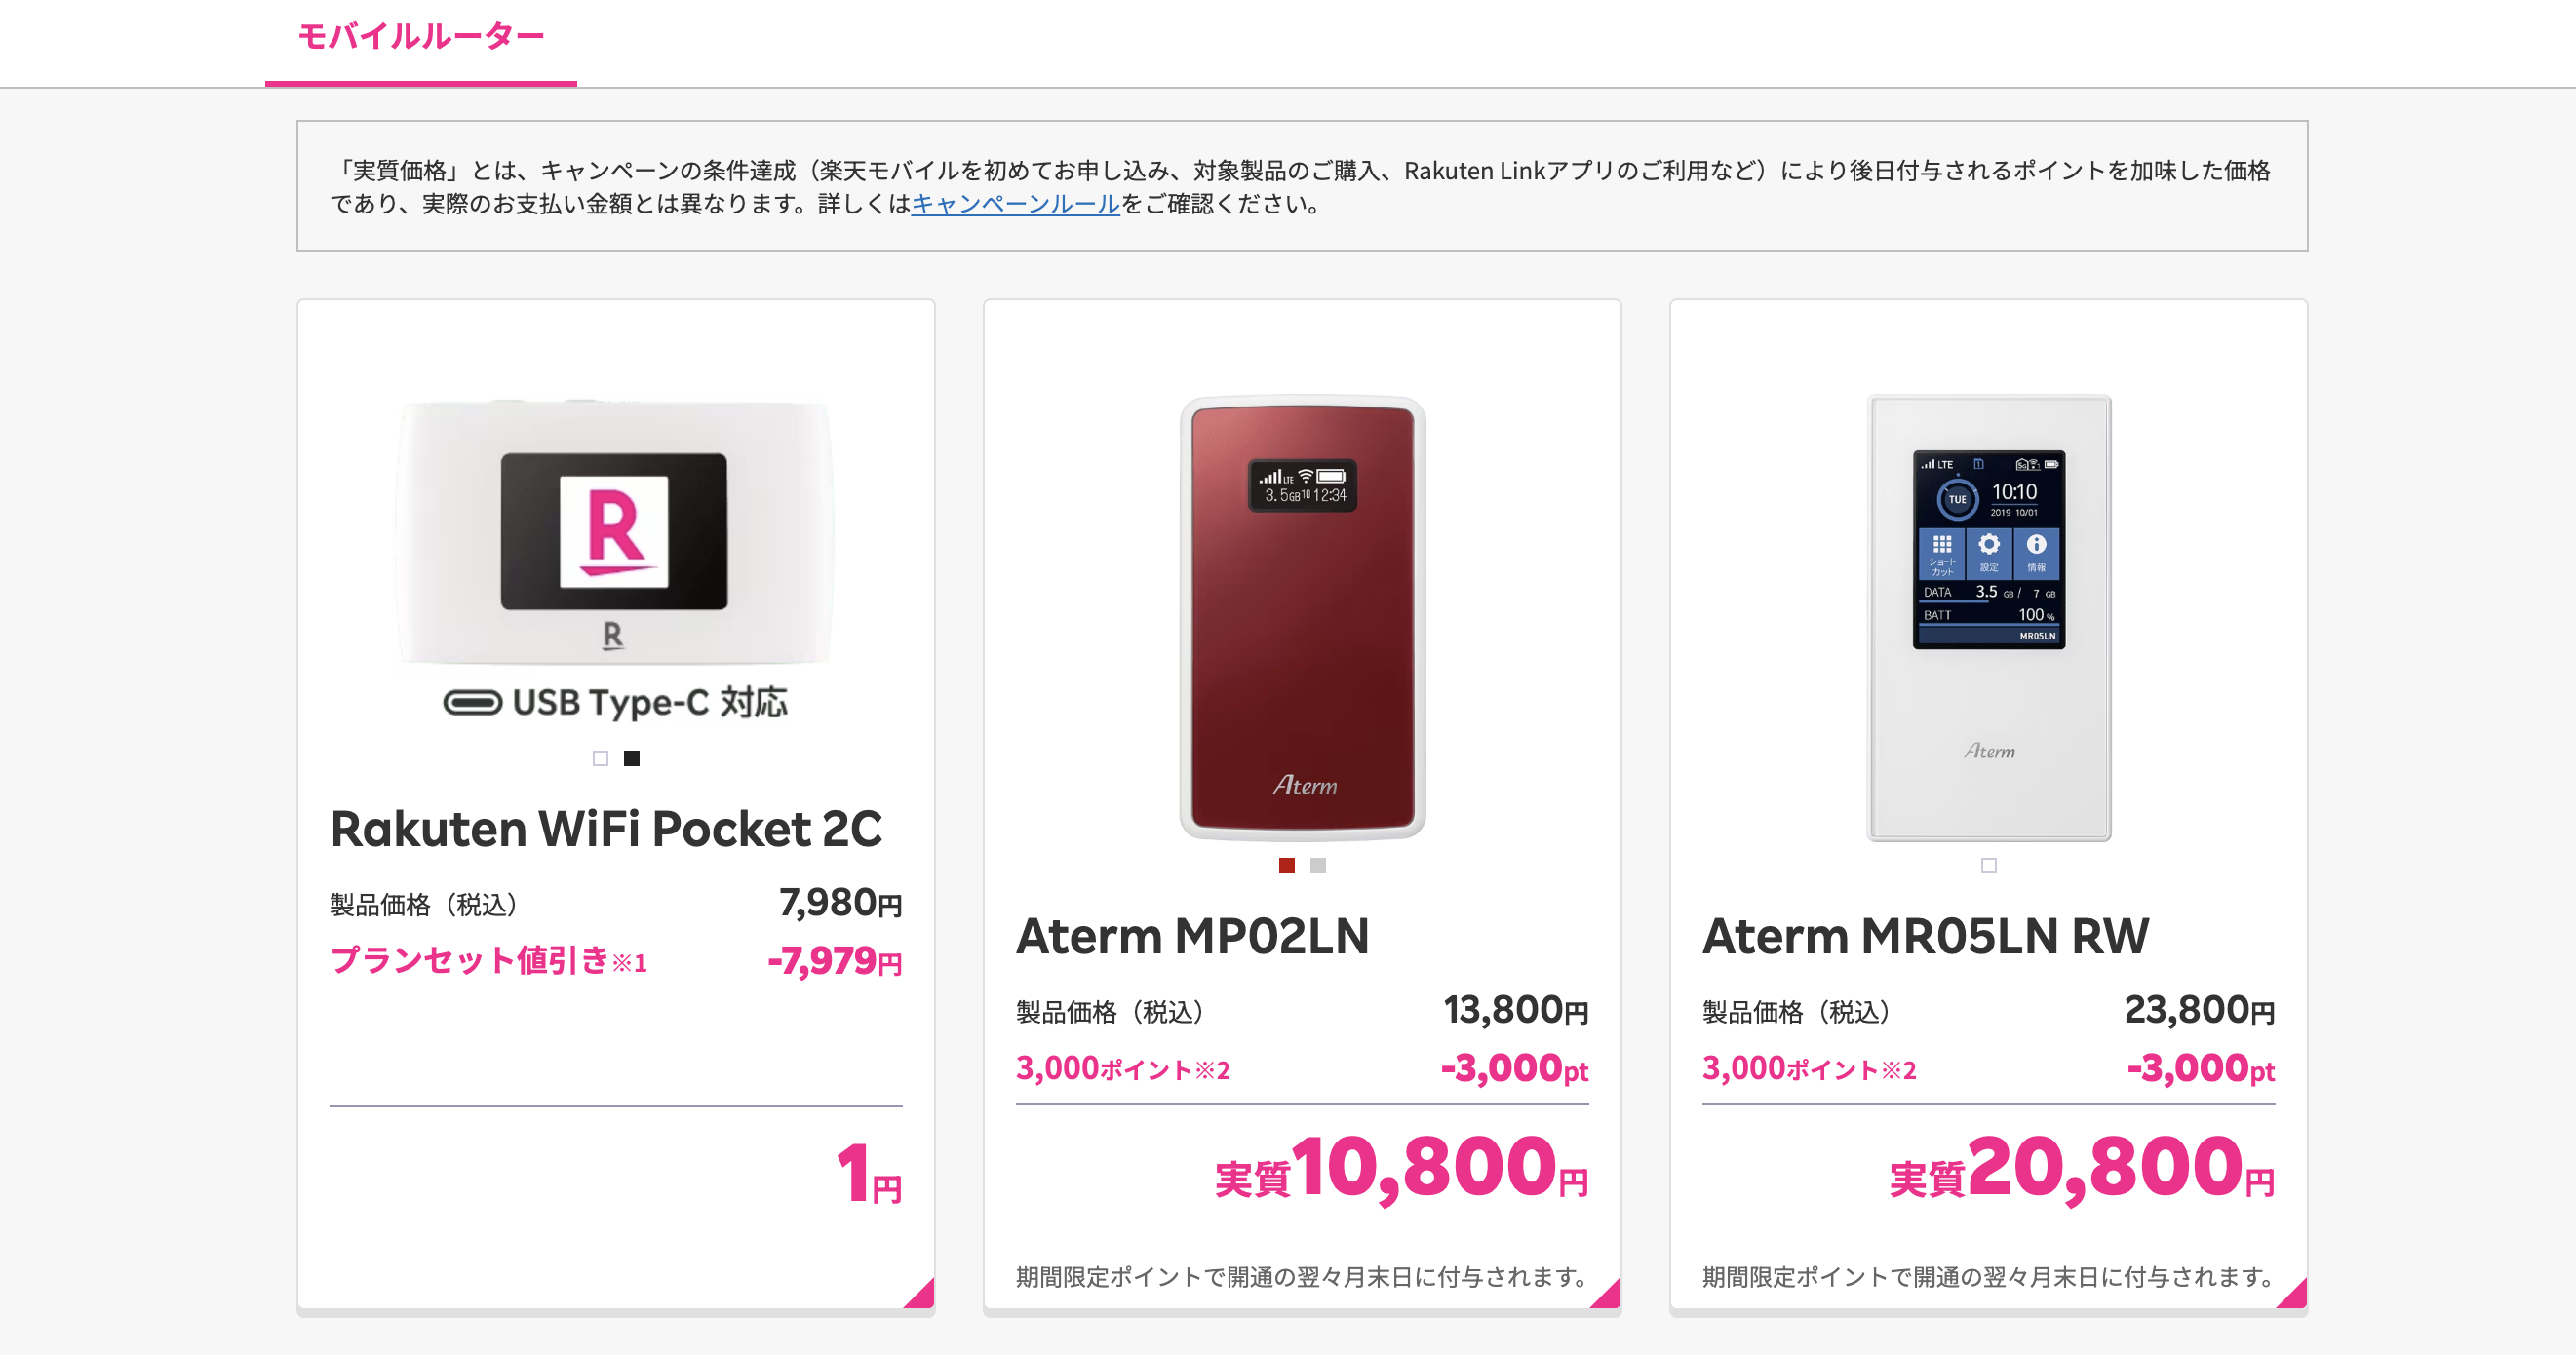 楽天モバイルの製品ページから「Rakuten WiFi Pocket 2C」を選択